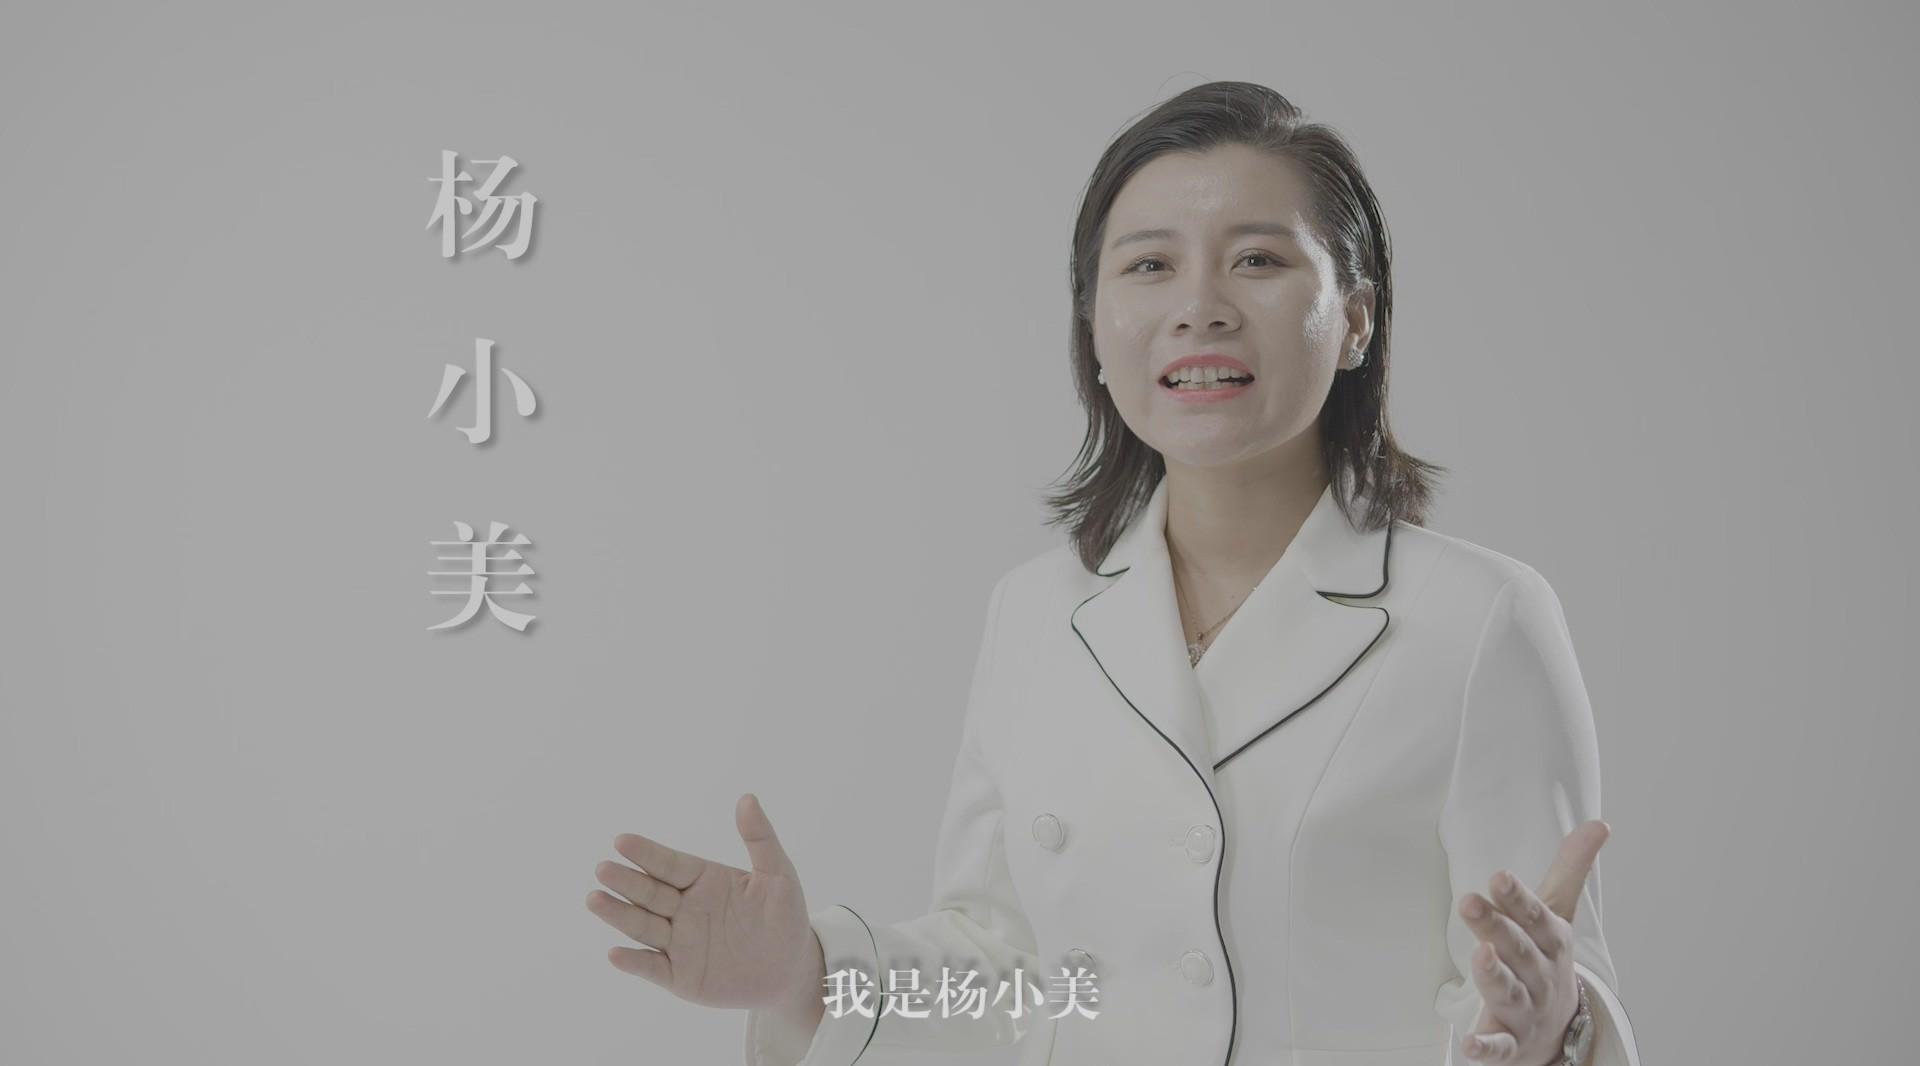 中创领袖大学 杨小美个人形象宣传片